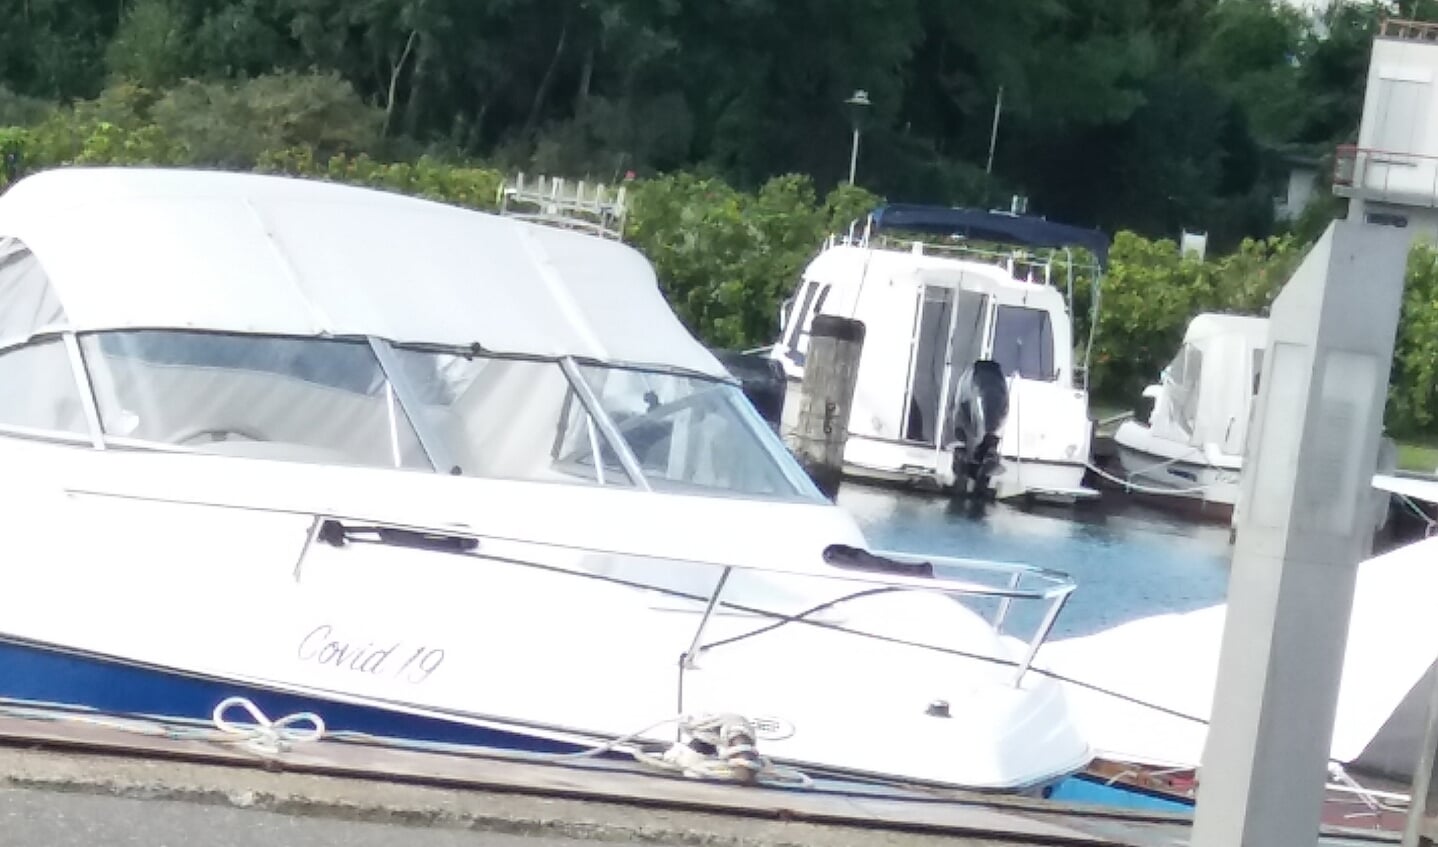 ,,Deze foto is gemaakt in de plaats Altefähr op het eiland Rügen. Ik vraag mij wel af waarom je je boot zo gaat noemen.